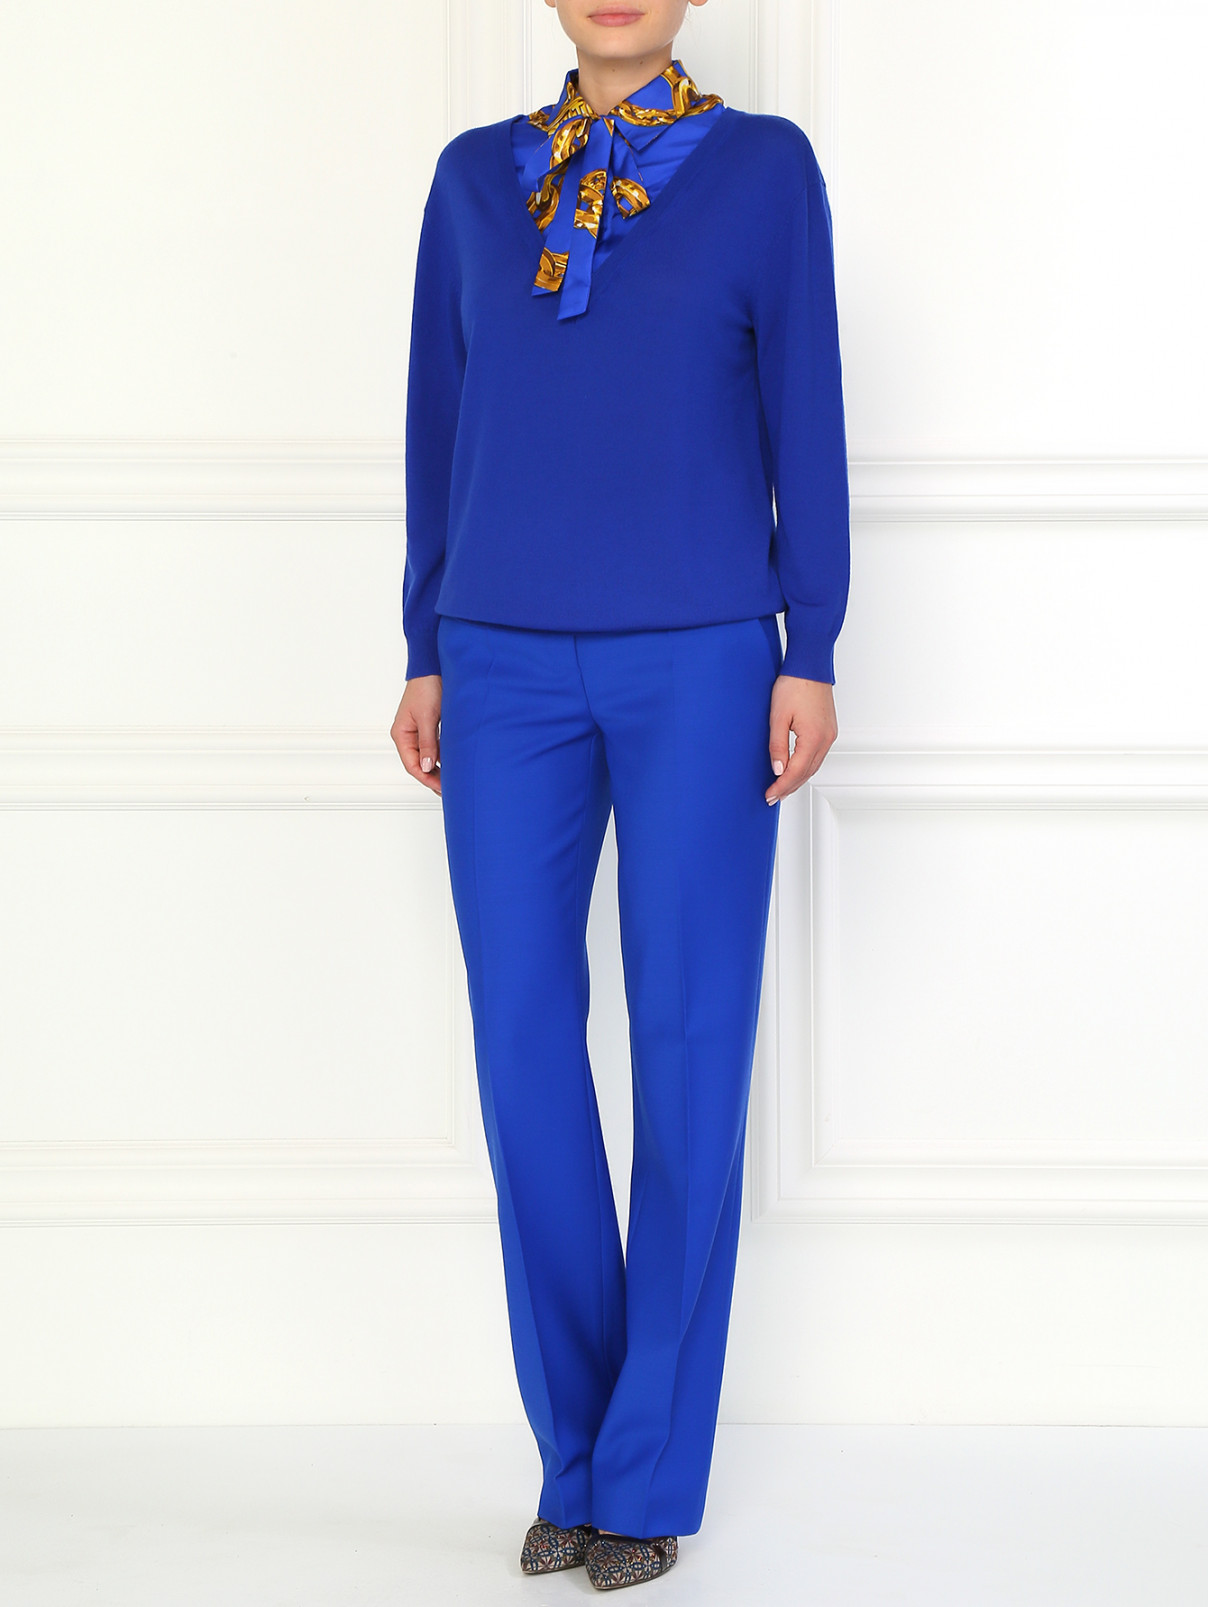 Шерстяные брюки прямого фасона Moschino Boutique  –  Модель Общий вид  – Цвет:  Синий